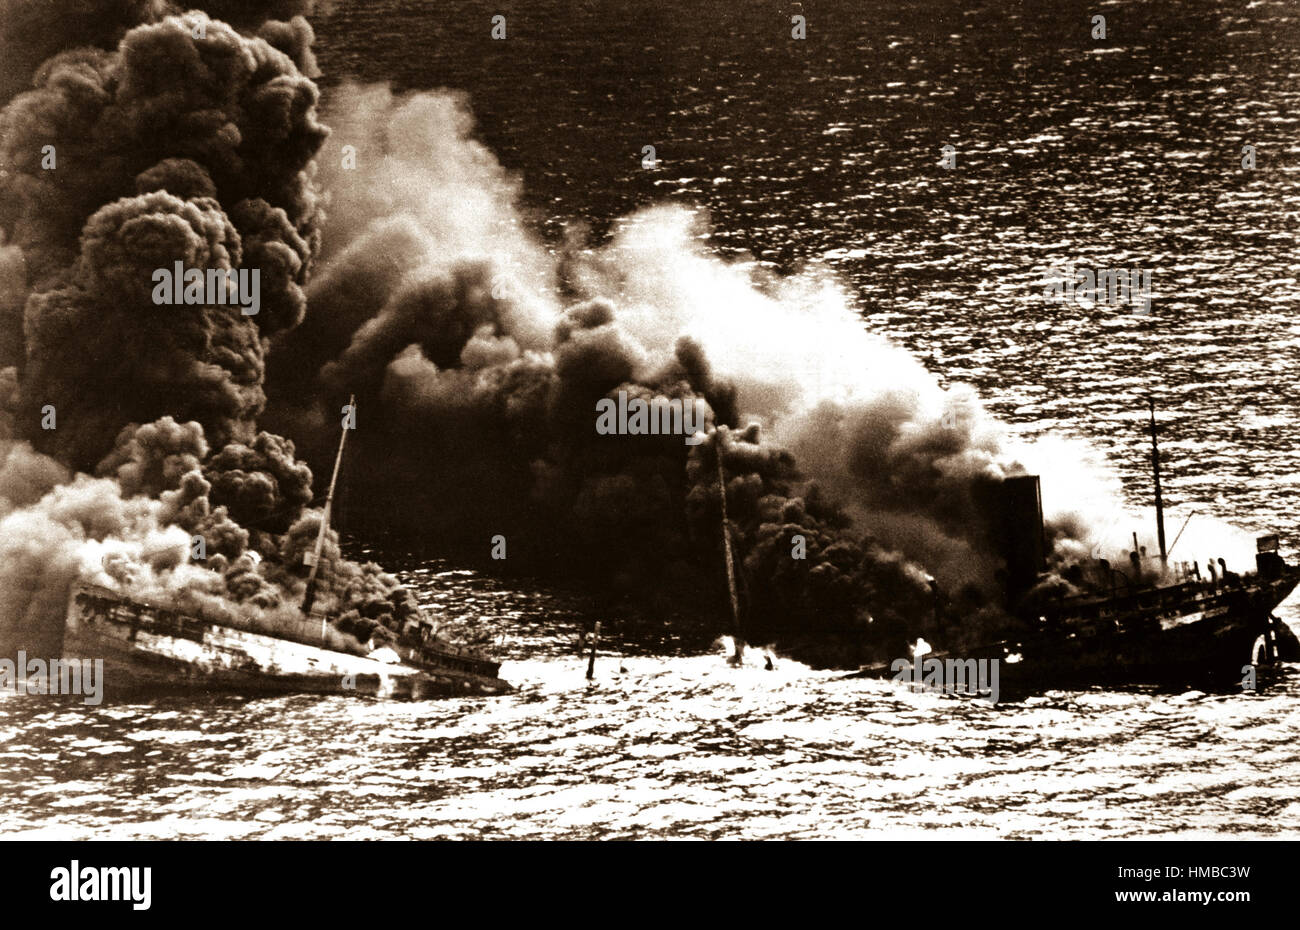 Allied tanker torpillé dans l'Atlantique par sous-marin allemand. Amidship l'effritement navire sous la chaleur du feu, s'installe vers le bas de l'océan. 1942. (Marine) Banque D'Images